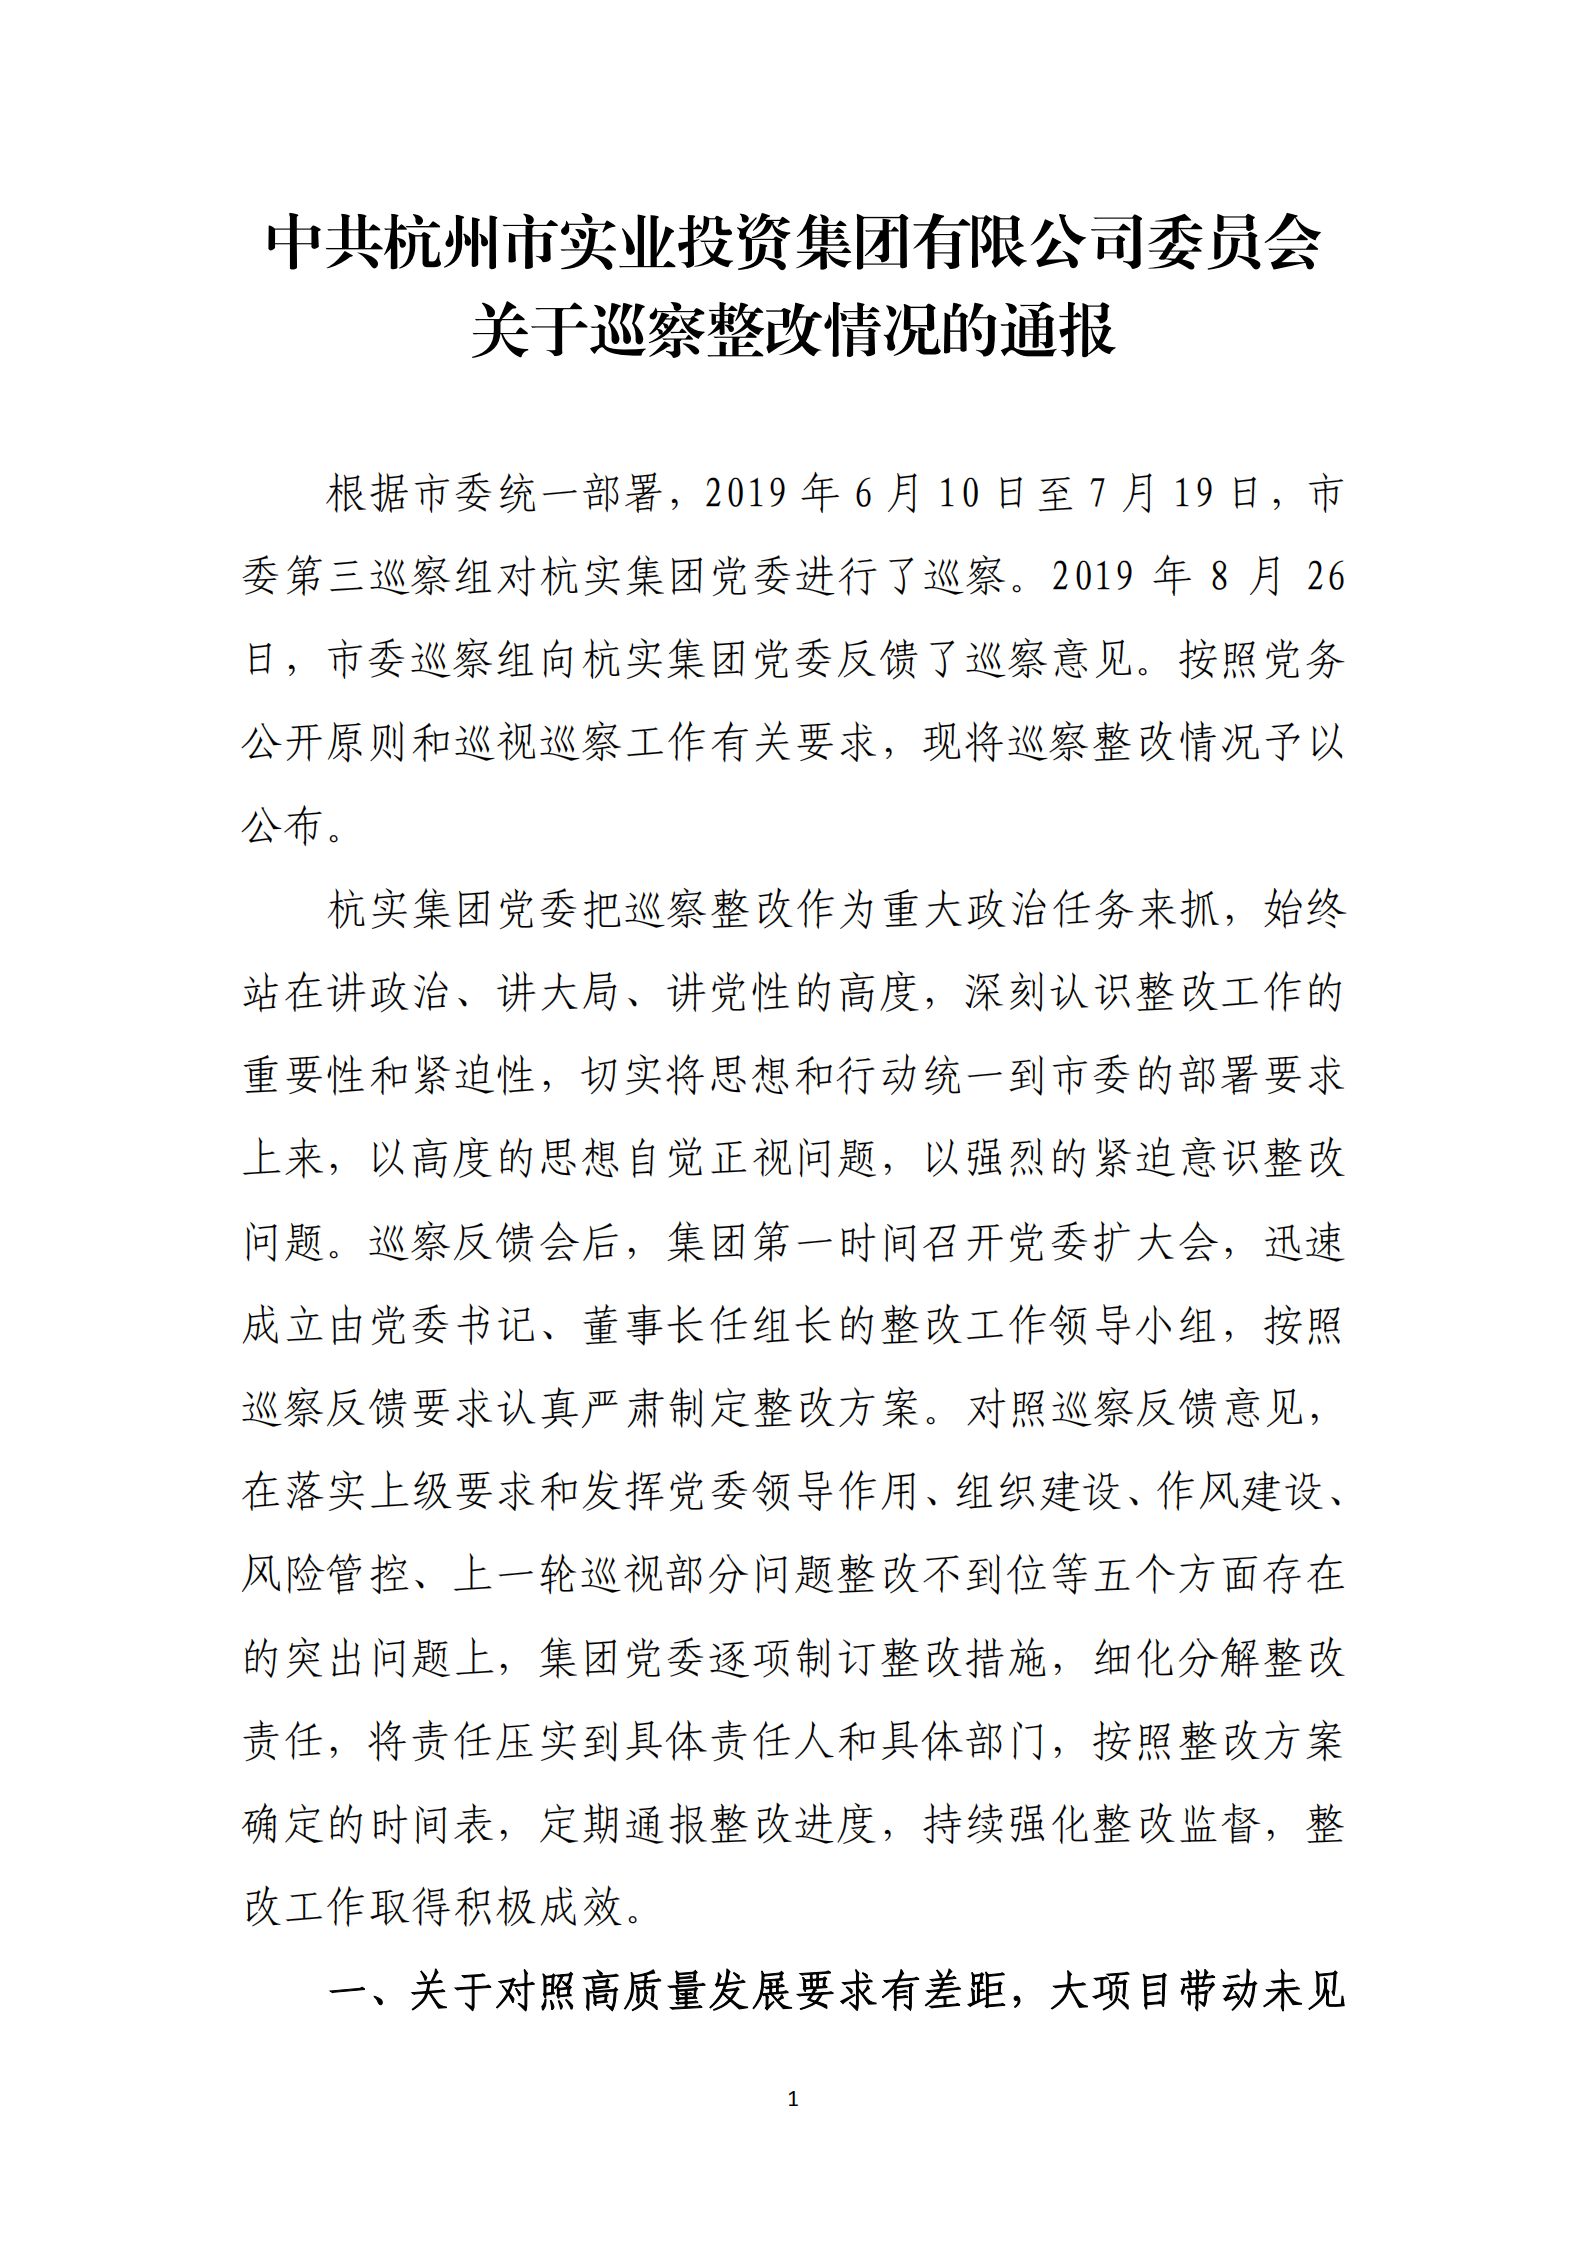 博乐体育网页【中国】有限公司党委关于巡察整改情况的通报_00.png